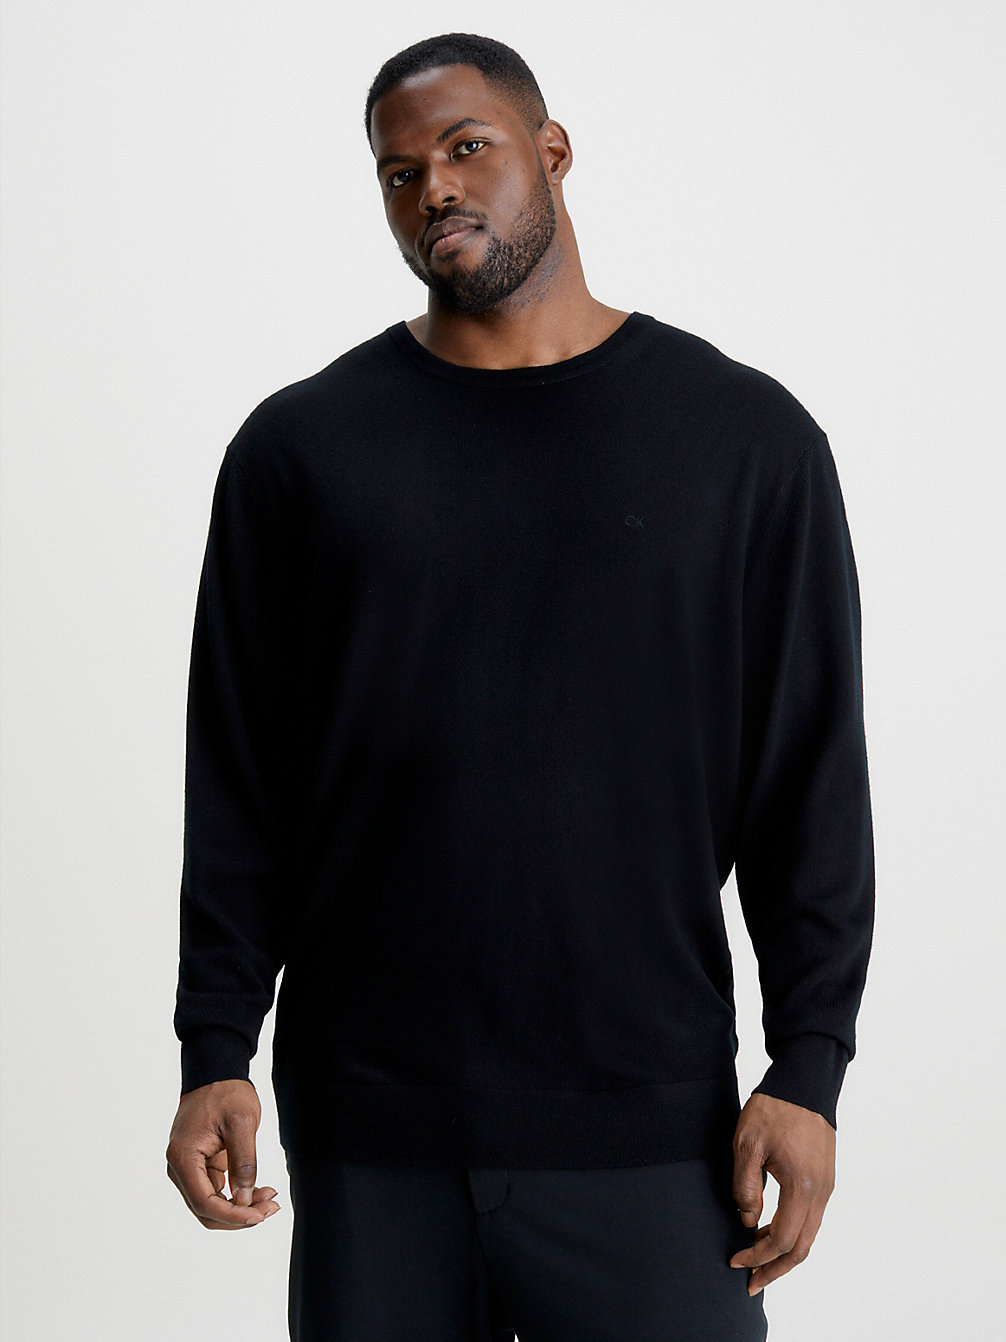 CK BLACK Plus Size Merino Wool Jumper undefined men Calvin Klein